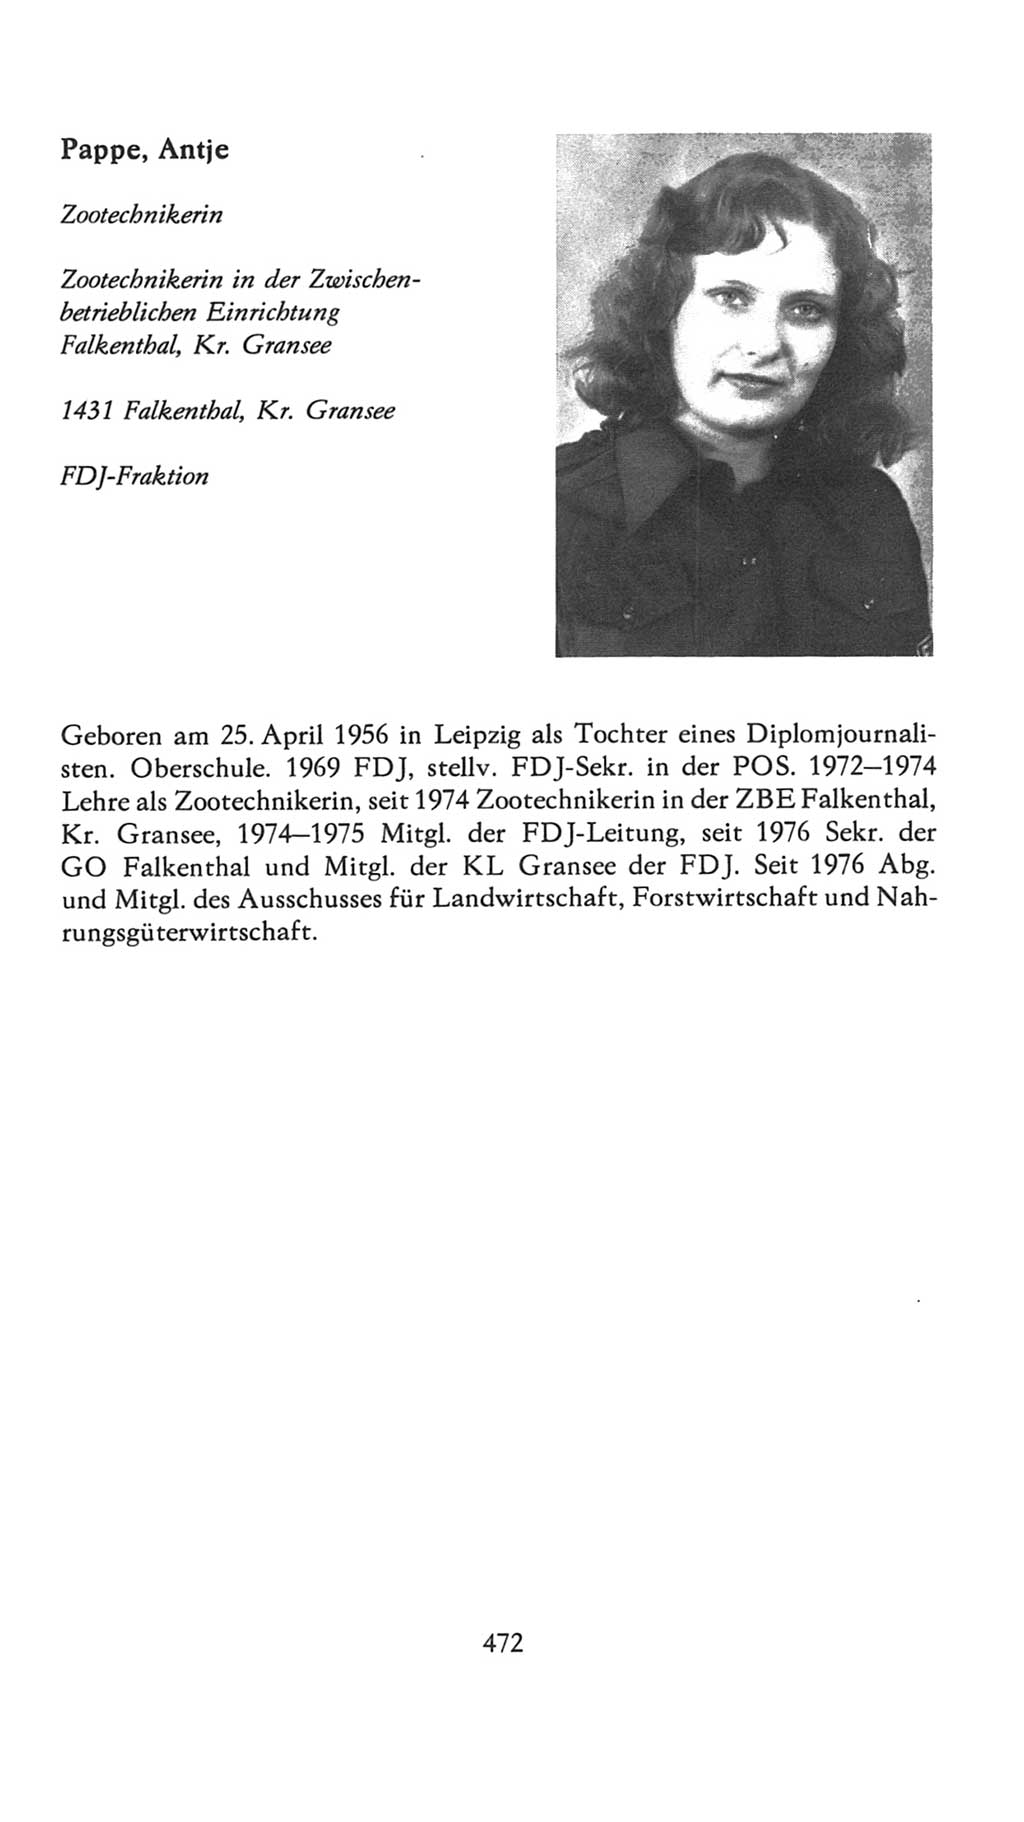 Volkskammer (VK) der Deutschen Demokratischen Republik (DDR), 7. Wahlperiode 1976-1981, Seite 472 (VK. DDR 7. WP. 1976-1981, S. 472)